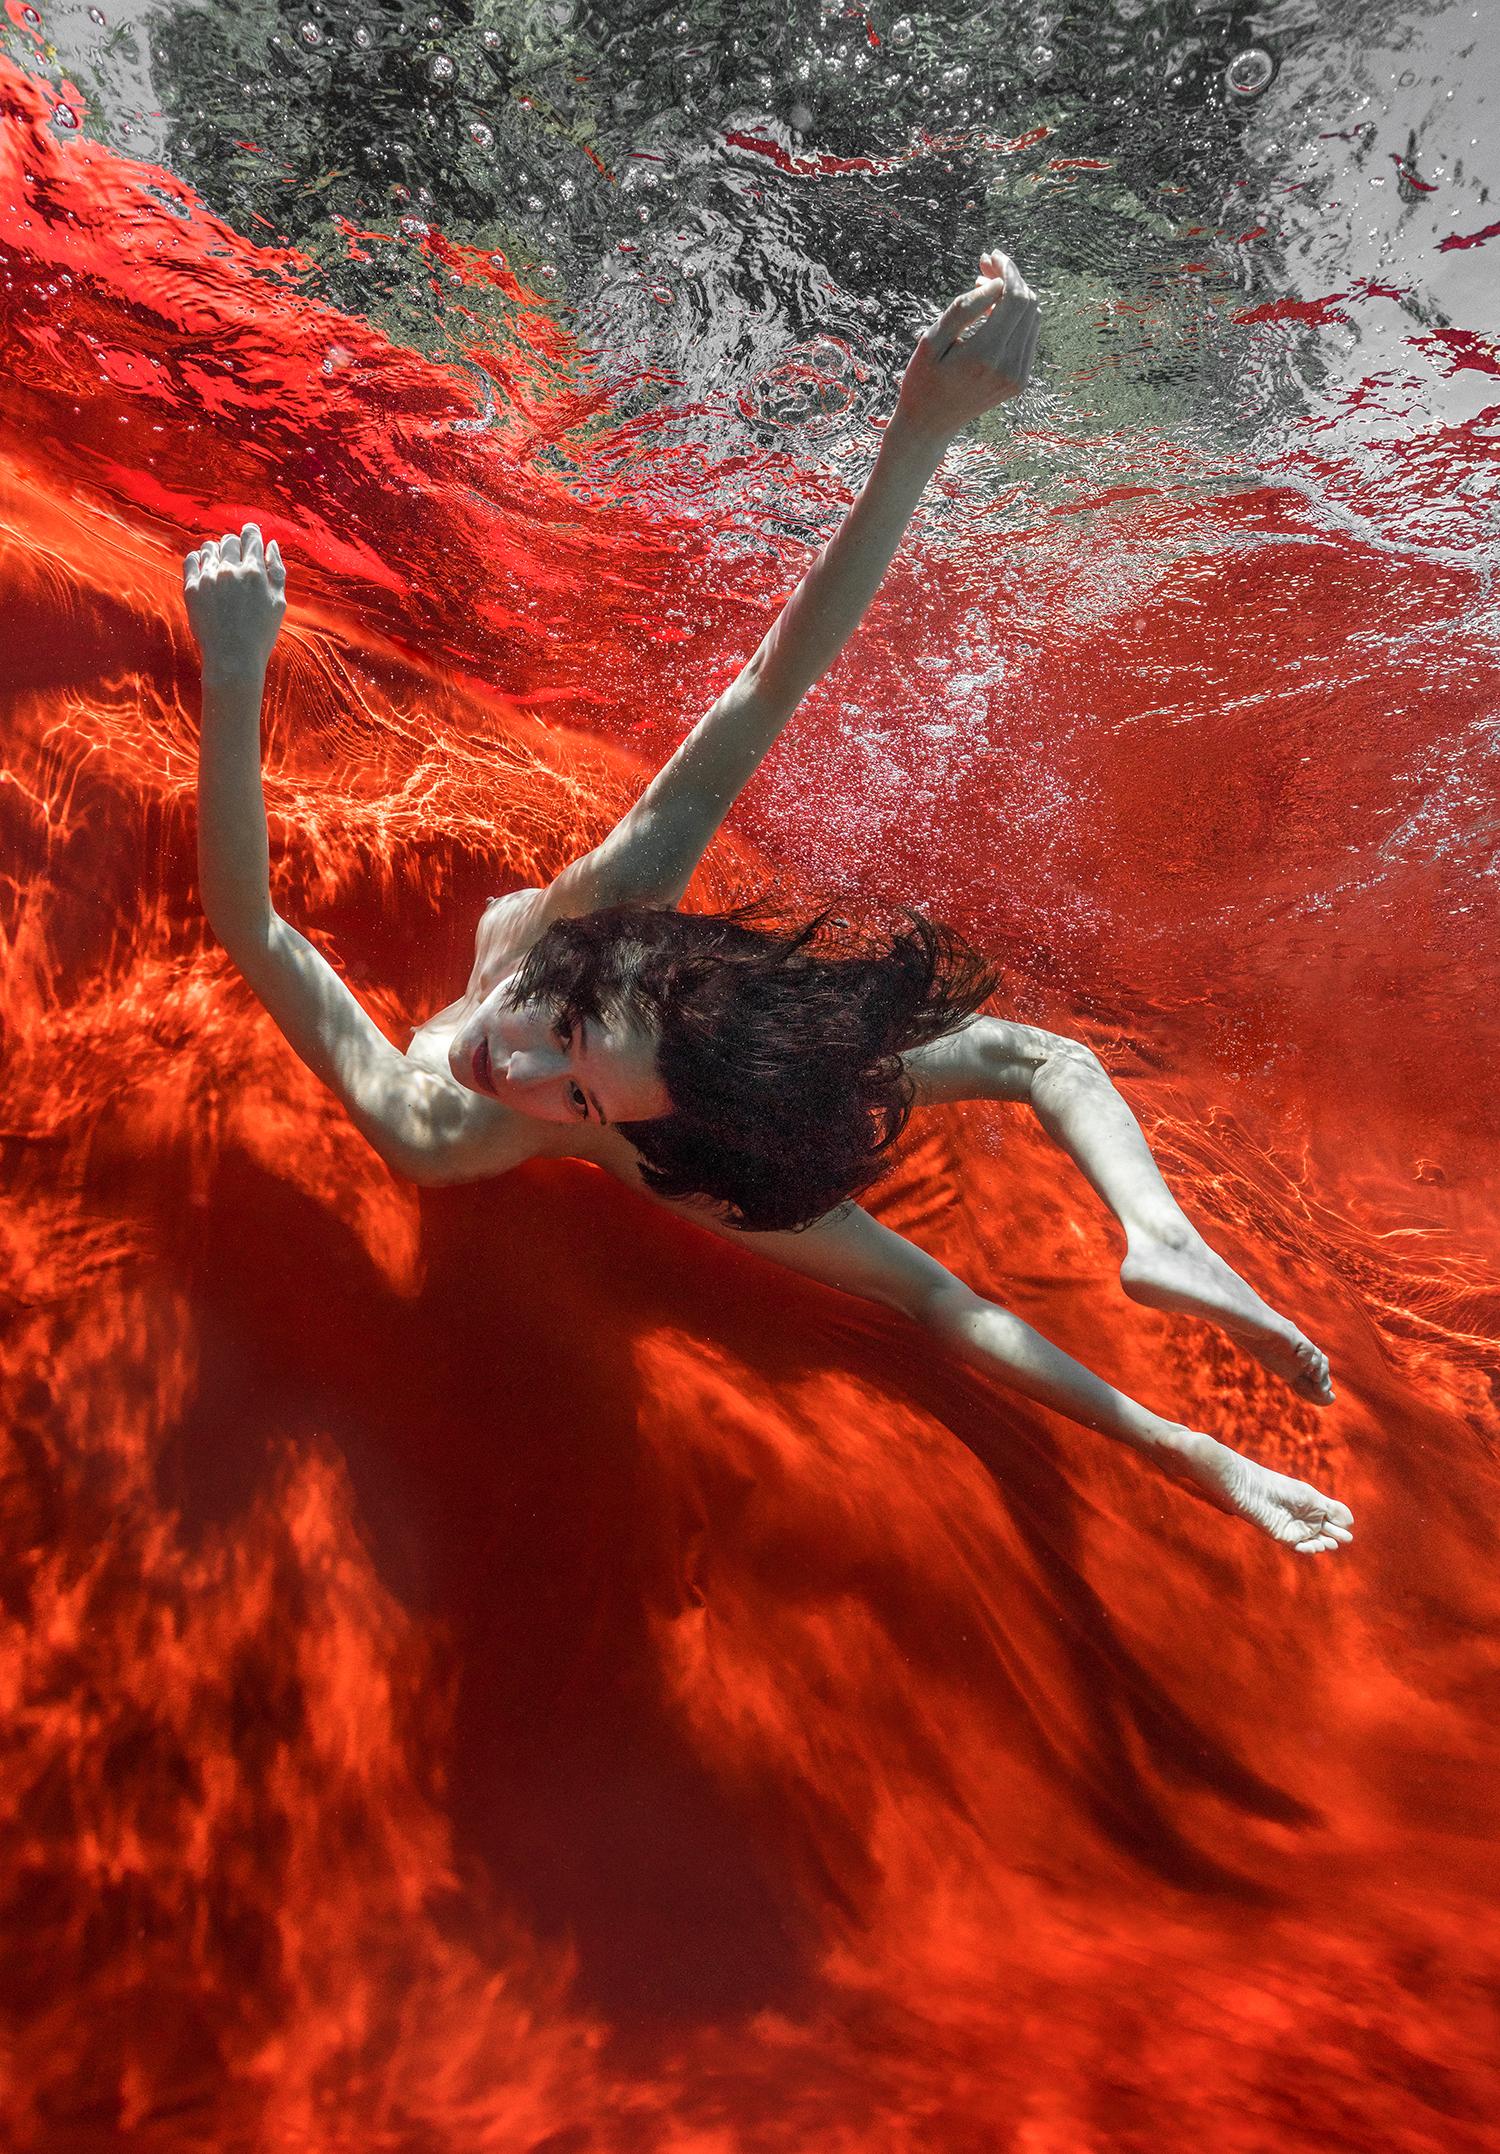 Nude Photograph Alex Sher - Wild Blood - photographie de nu sous-marine - impression sur aluminium 36x24"